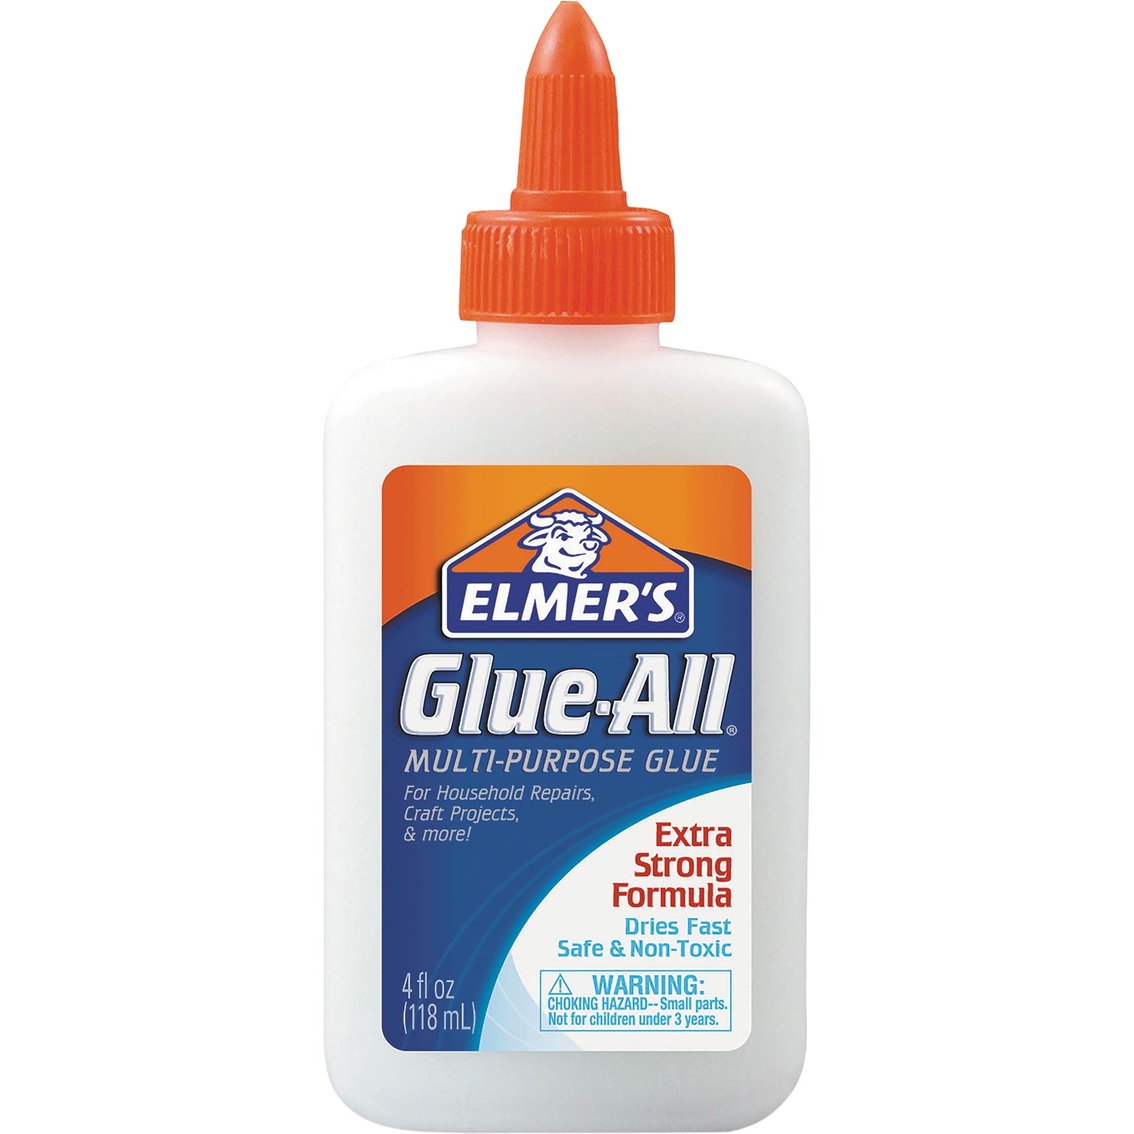 Elmers Glue-All Multi-Purpose Glue, Shop